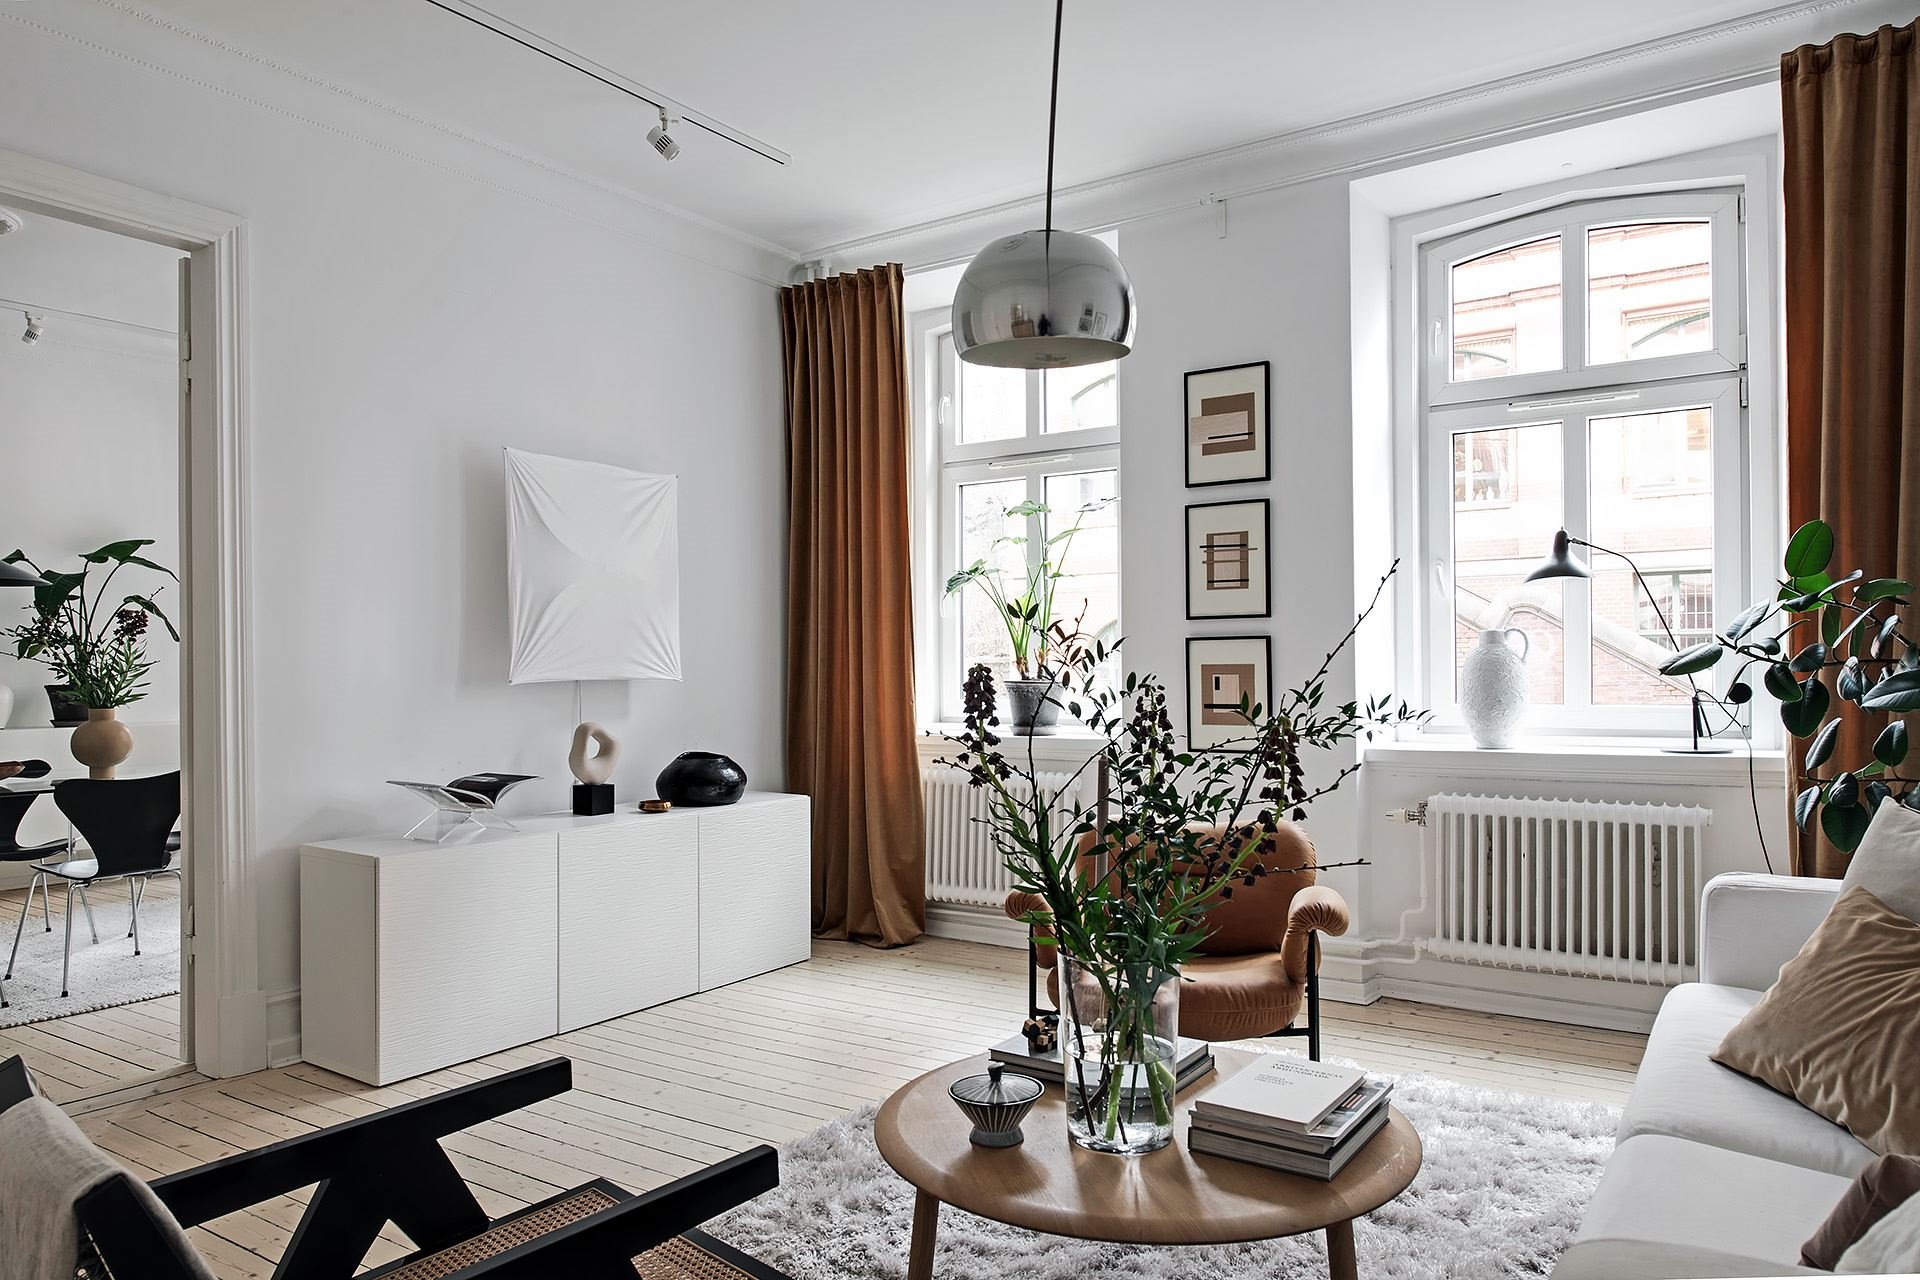 Piso con decoracion nordica moderna y paredes pintadas en color gris salon con sofa y alfombra blanca